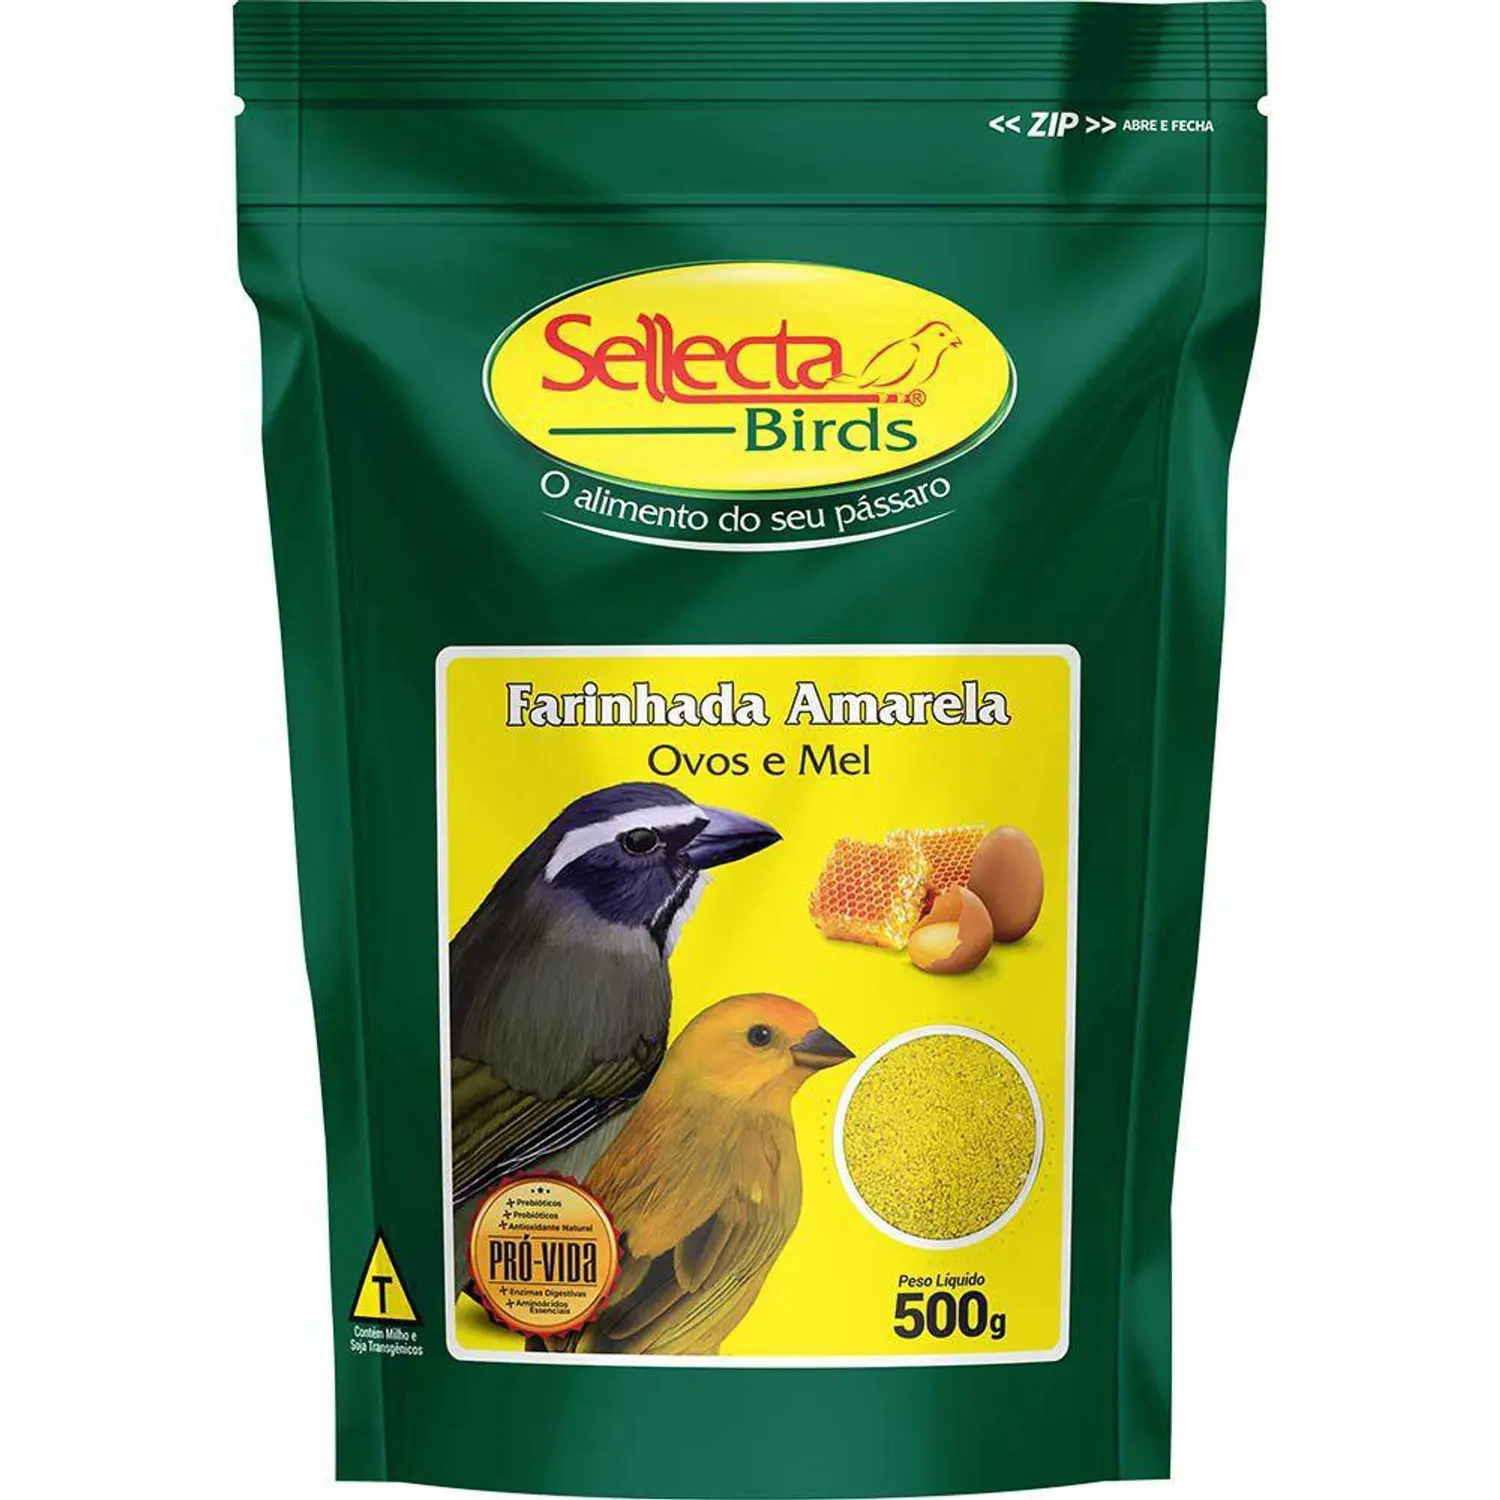 Sellecta Farinhada Amarela com Ovos e Mel 500g